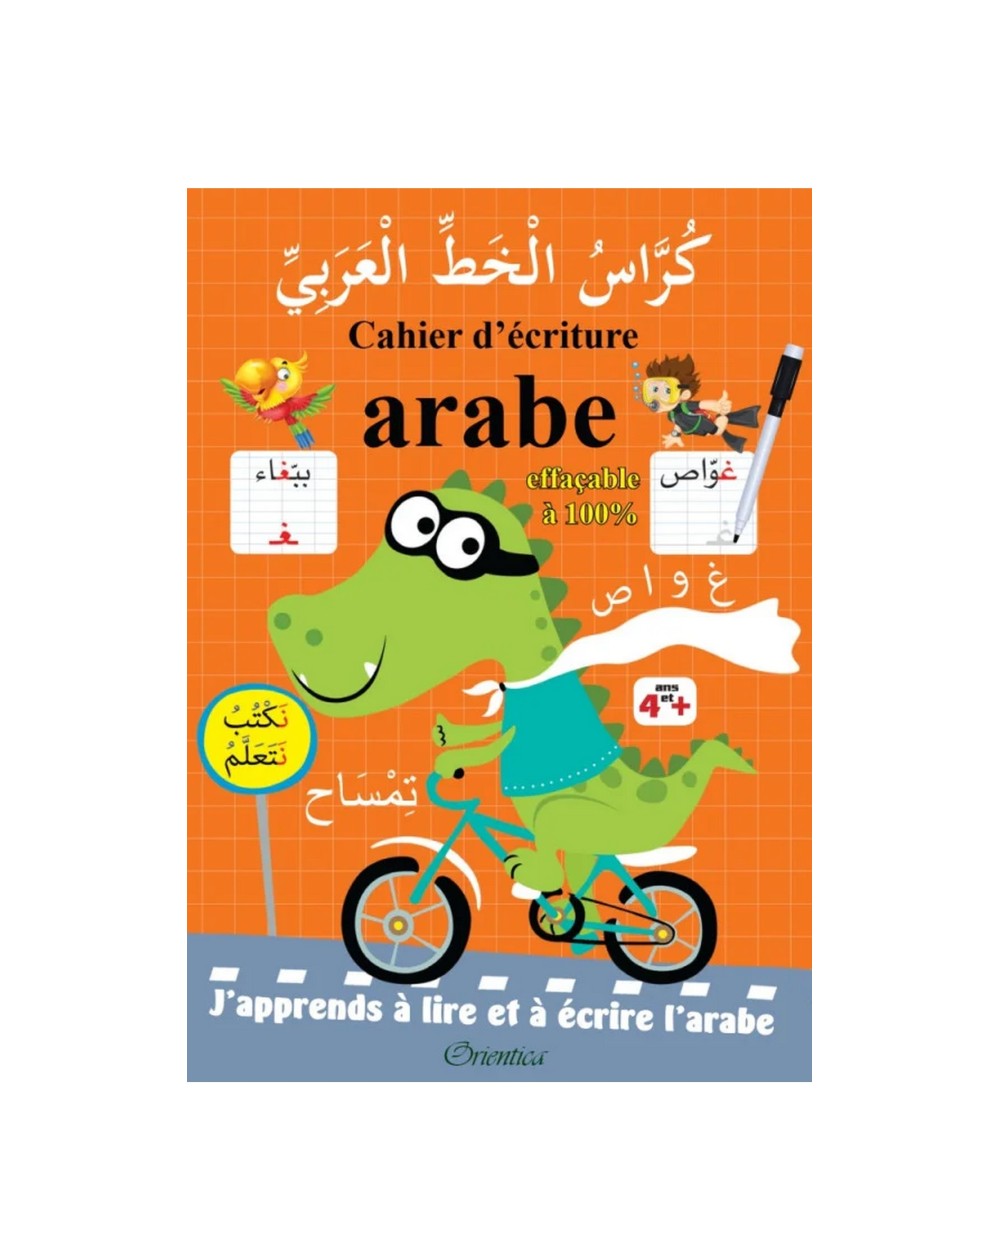 Cahier d'écriture arabe - effaçable 100%